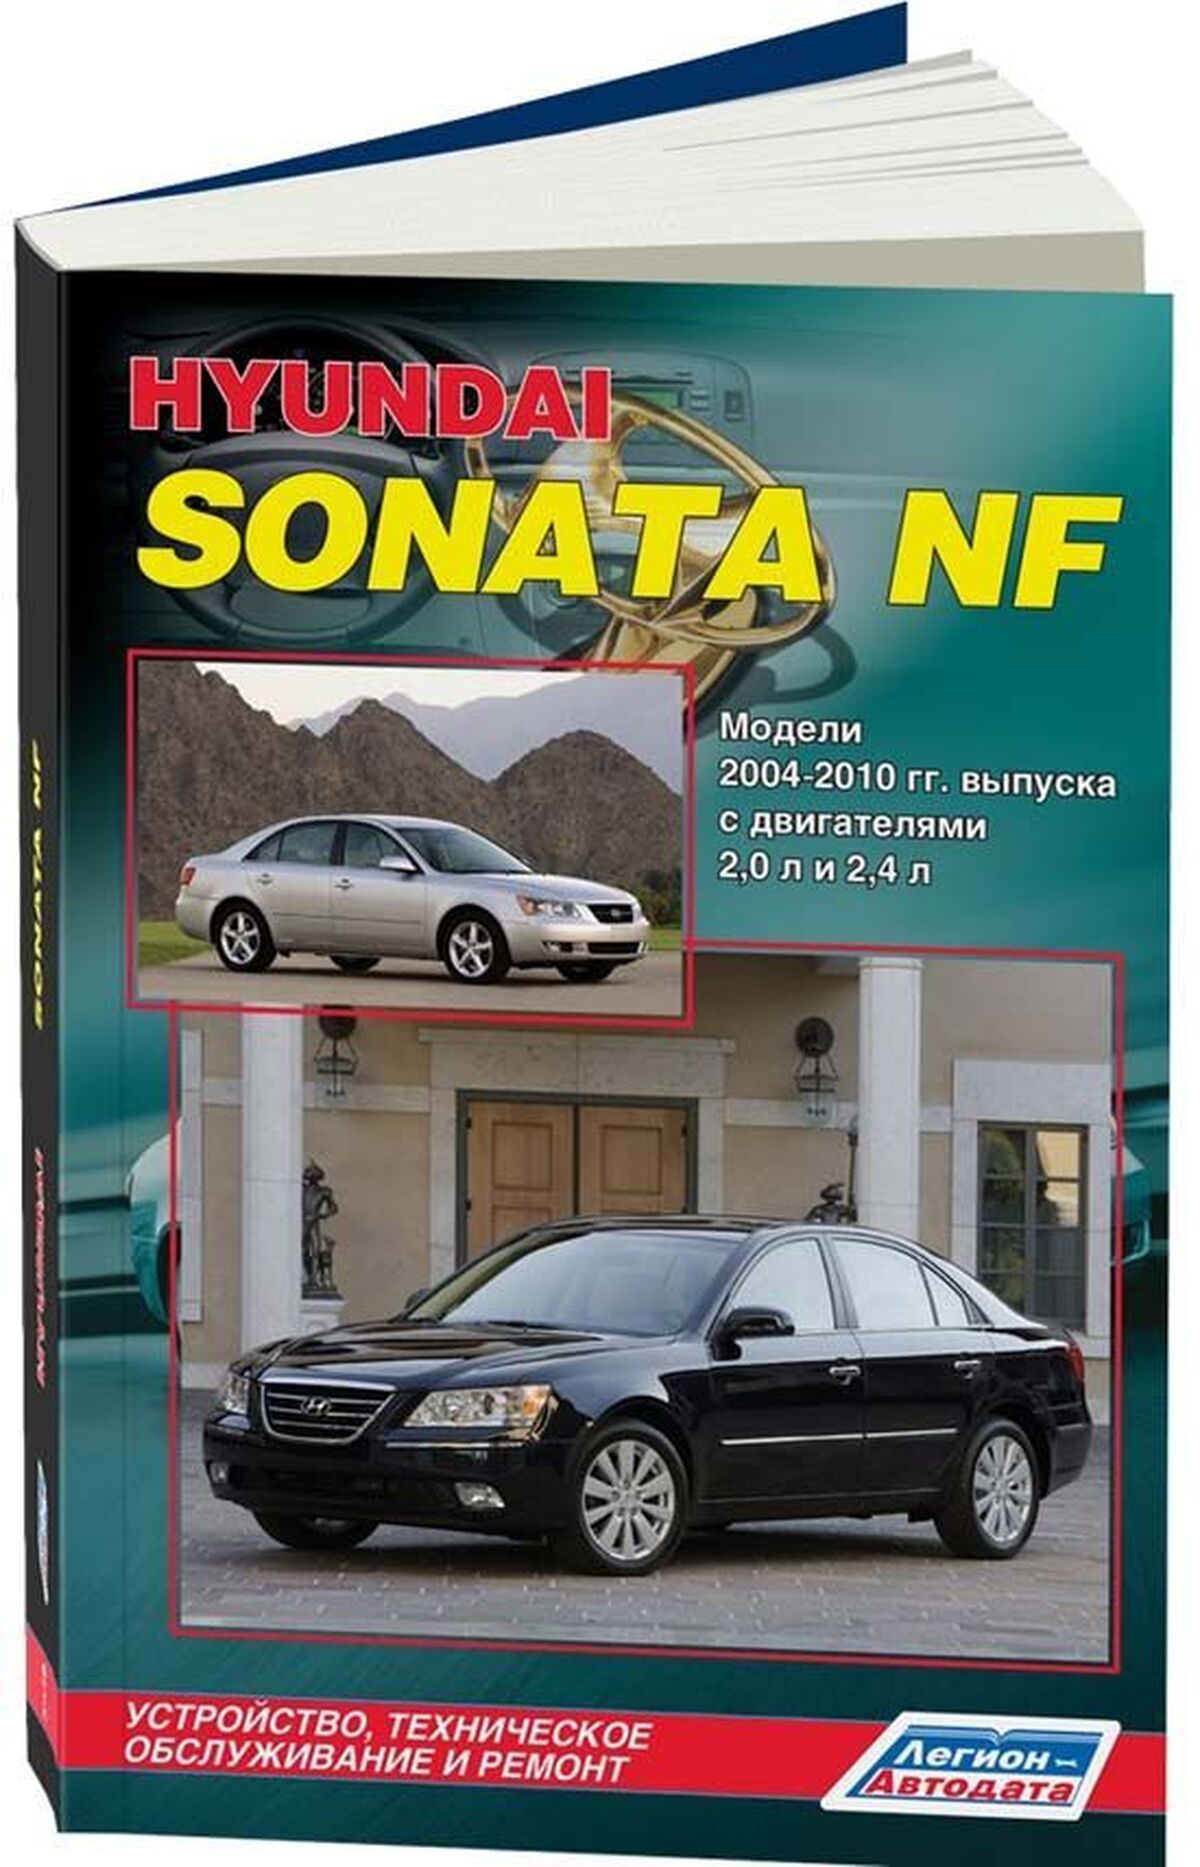 Книга: HYUNDAI SONATA NF (б) 2004-2010 г.в., рем., экспл., то | Легион-Aвтодата